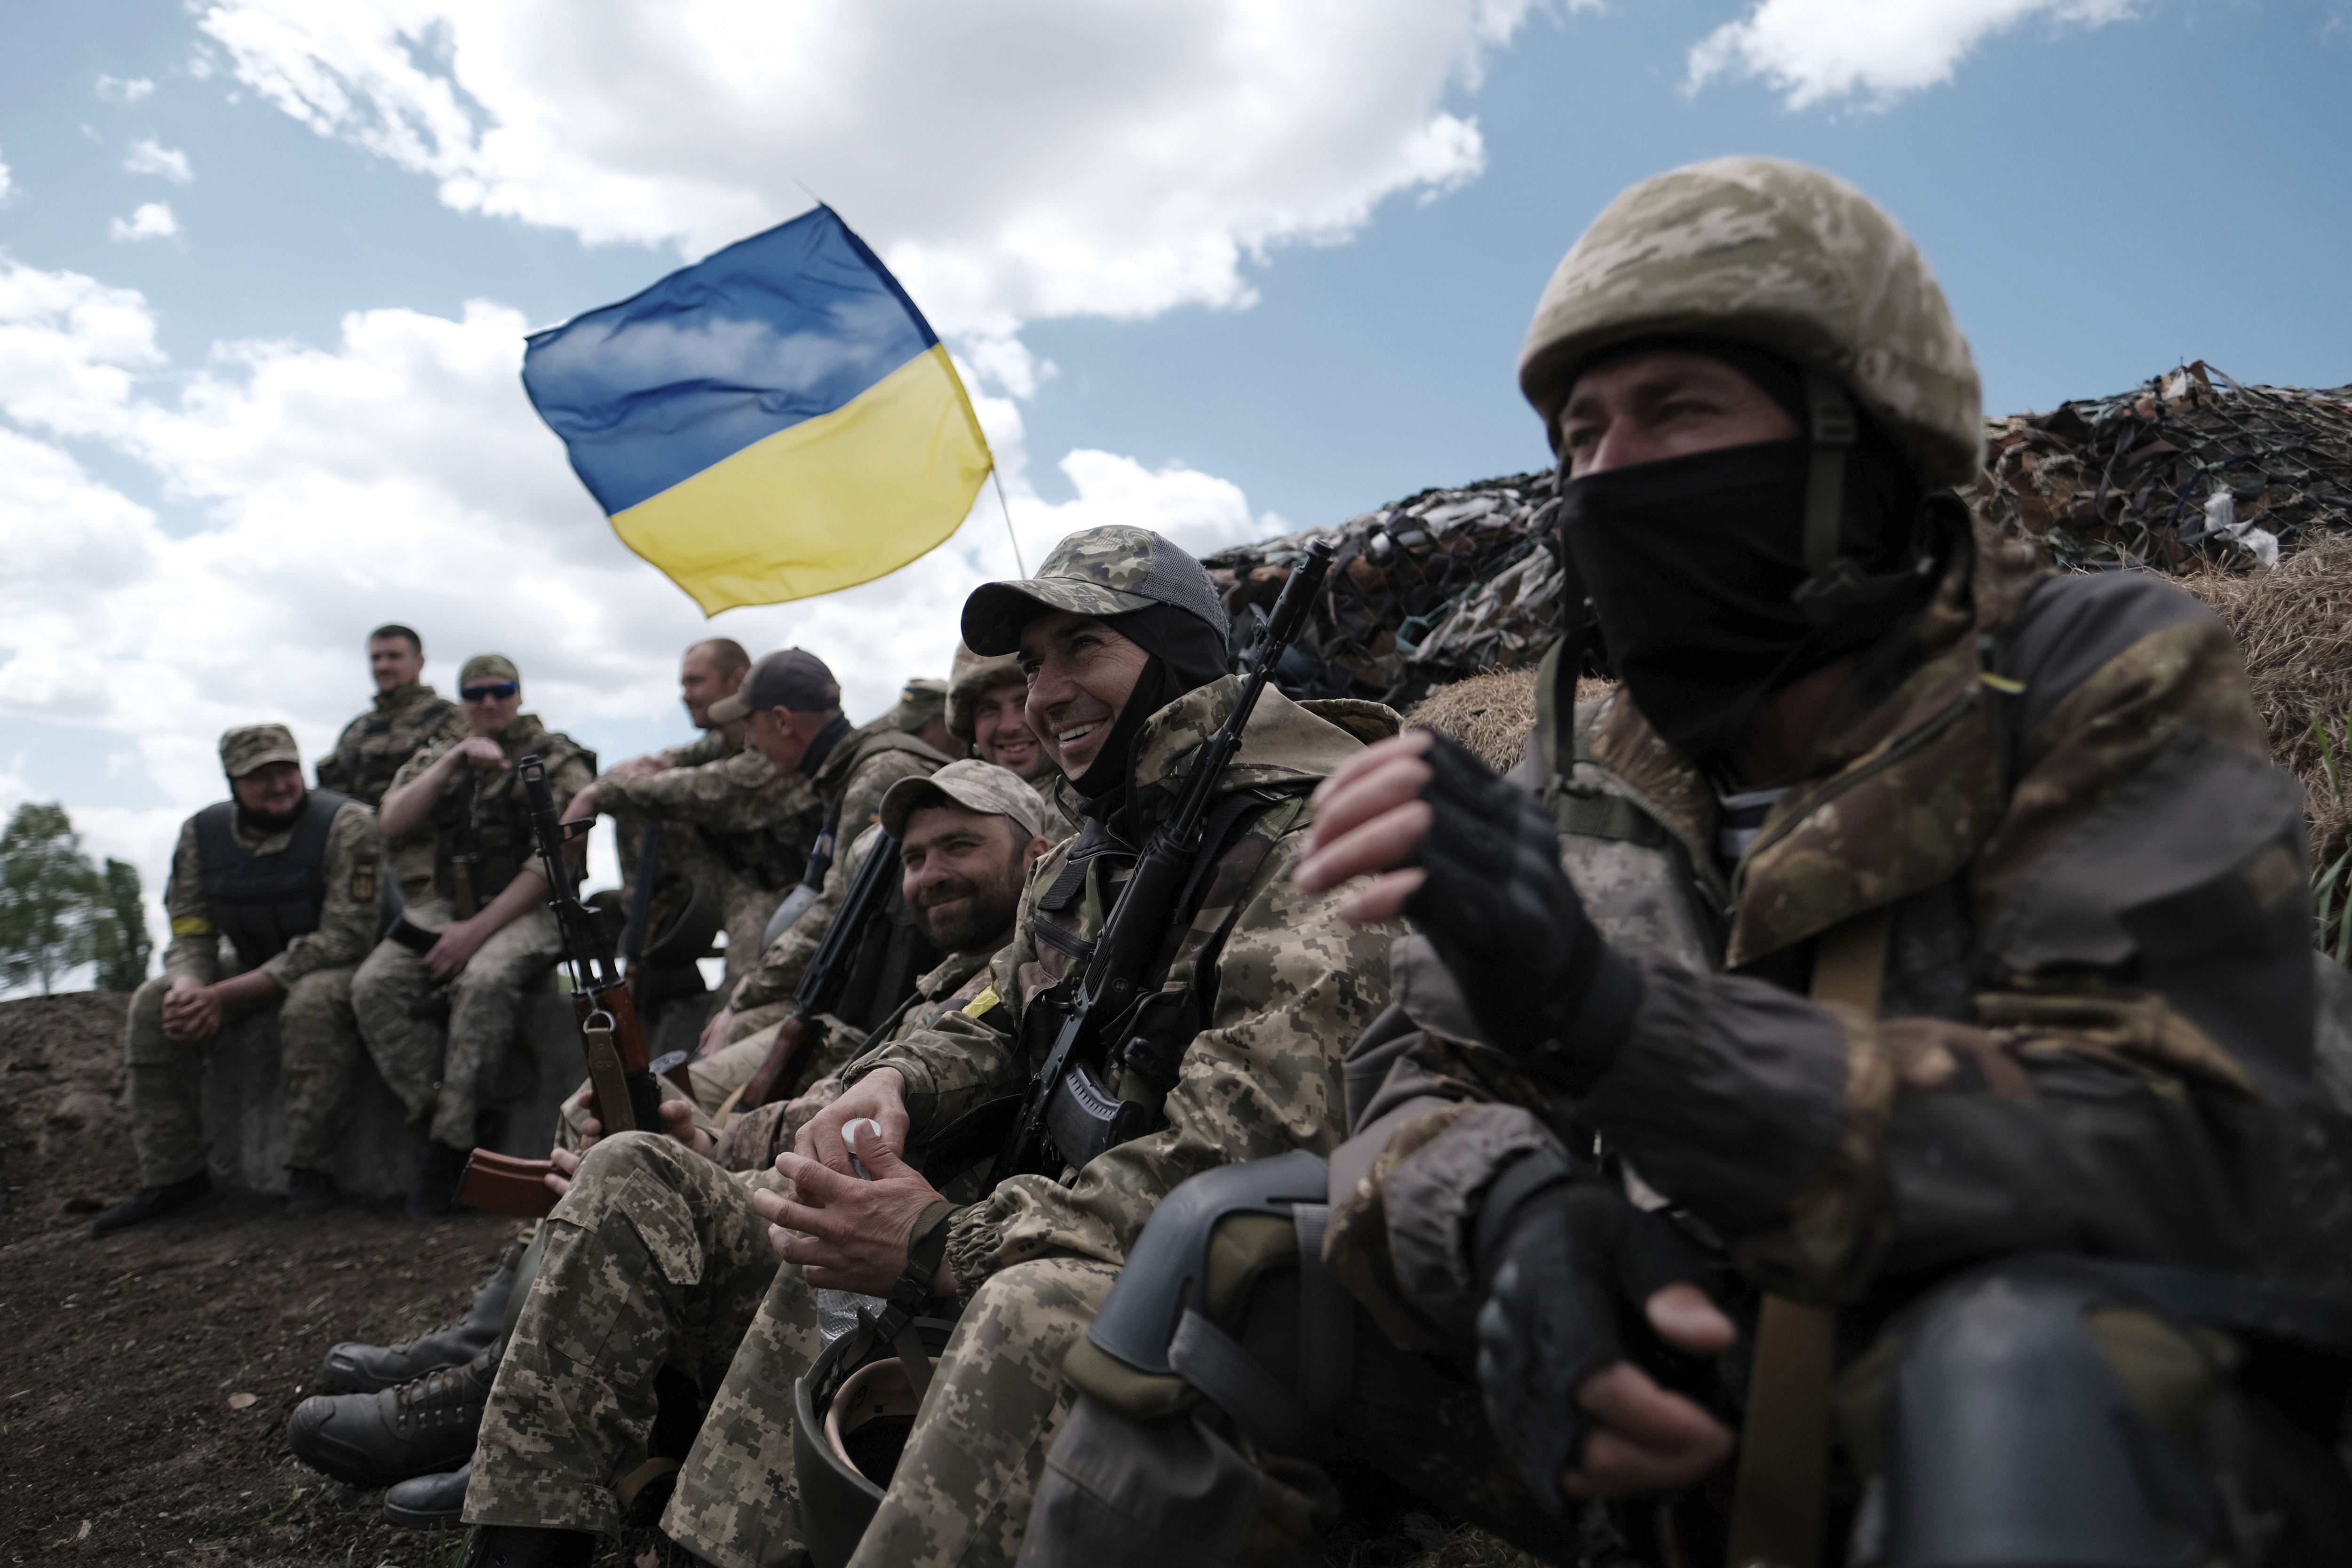 Ćwiczenia wojskowe dla cywili w okolicach Kijowa, maj 2022 r.